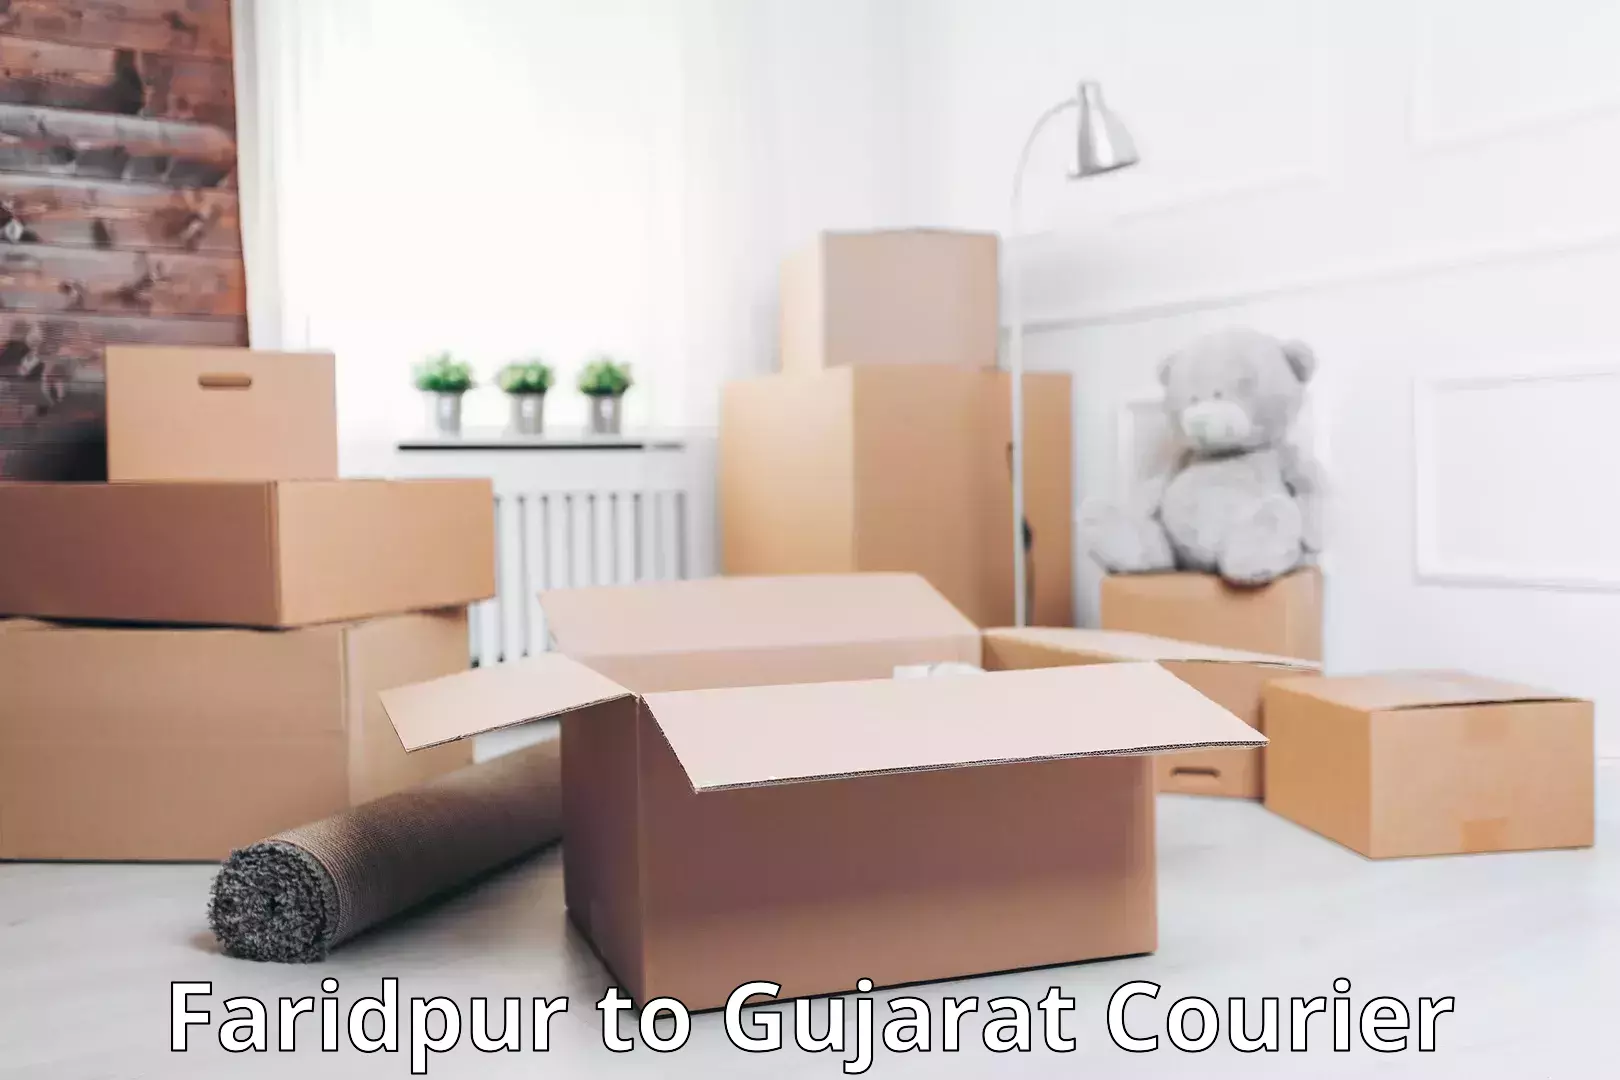 Luggage shipment tracking in Faridpur to Gujarat